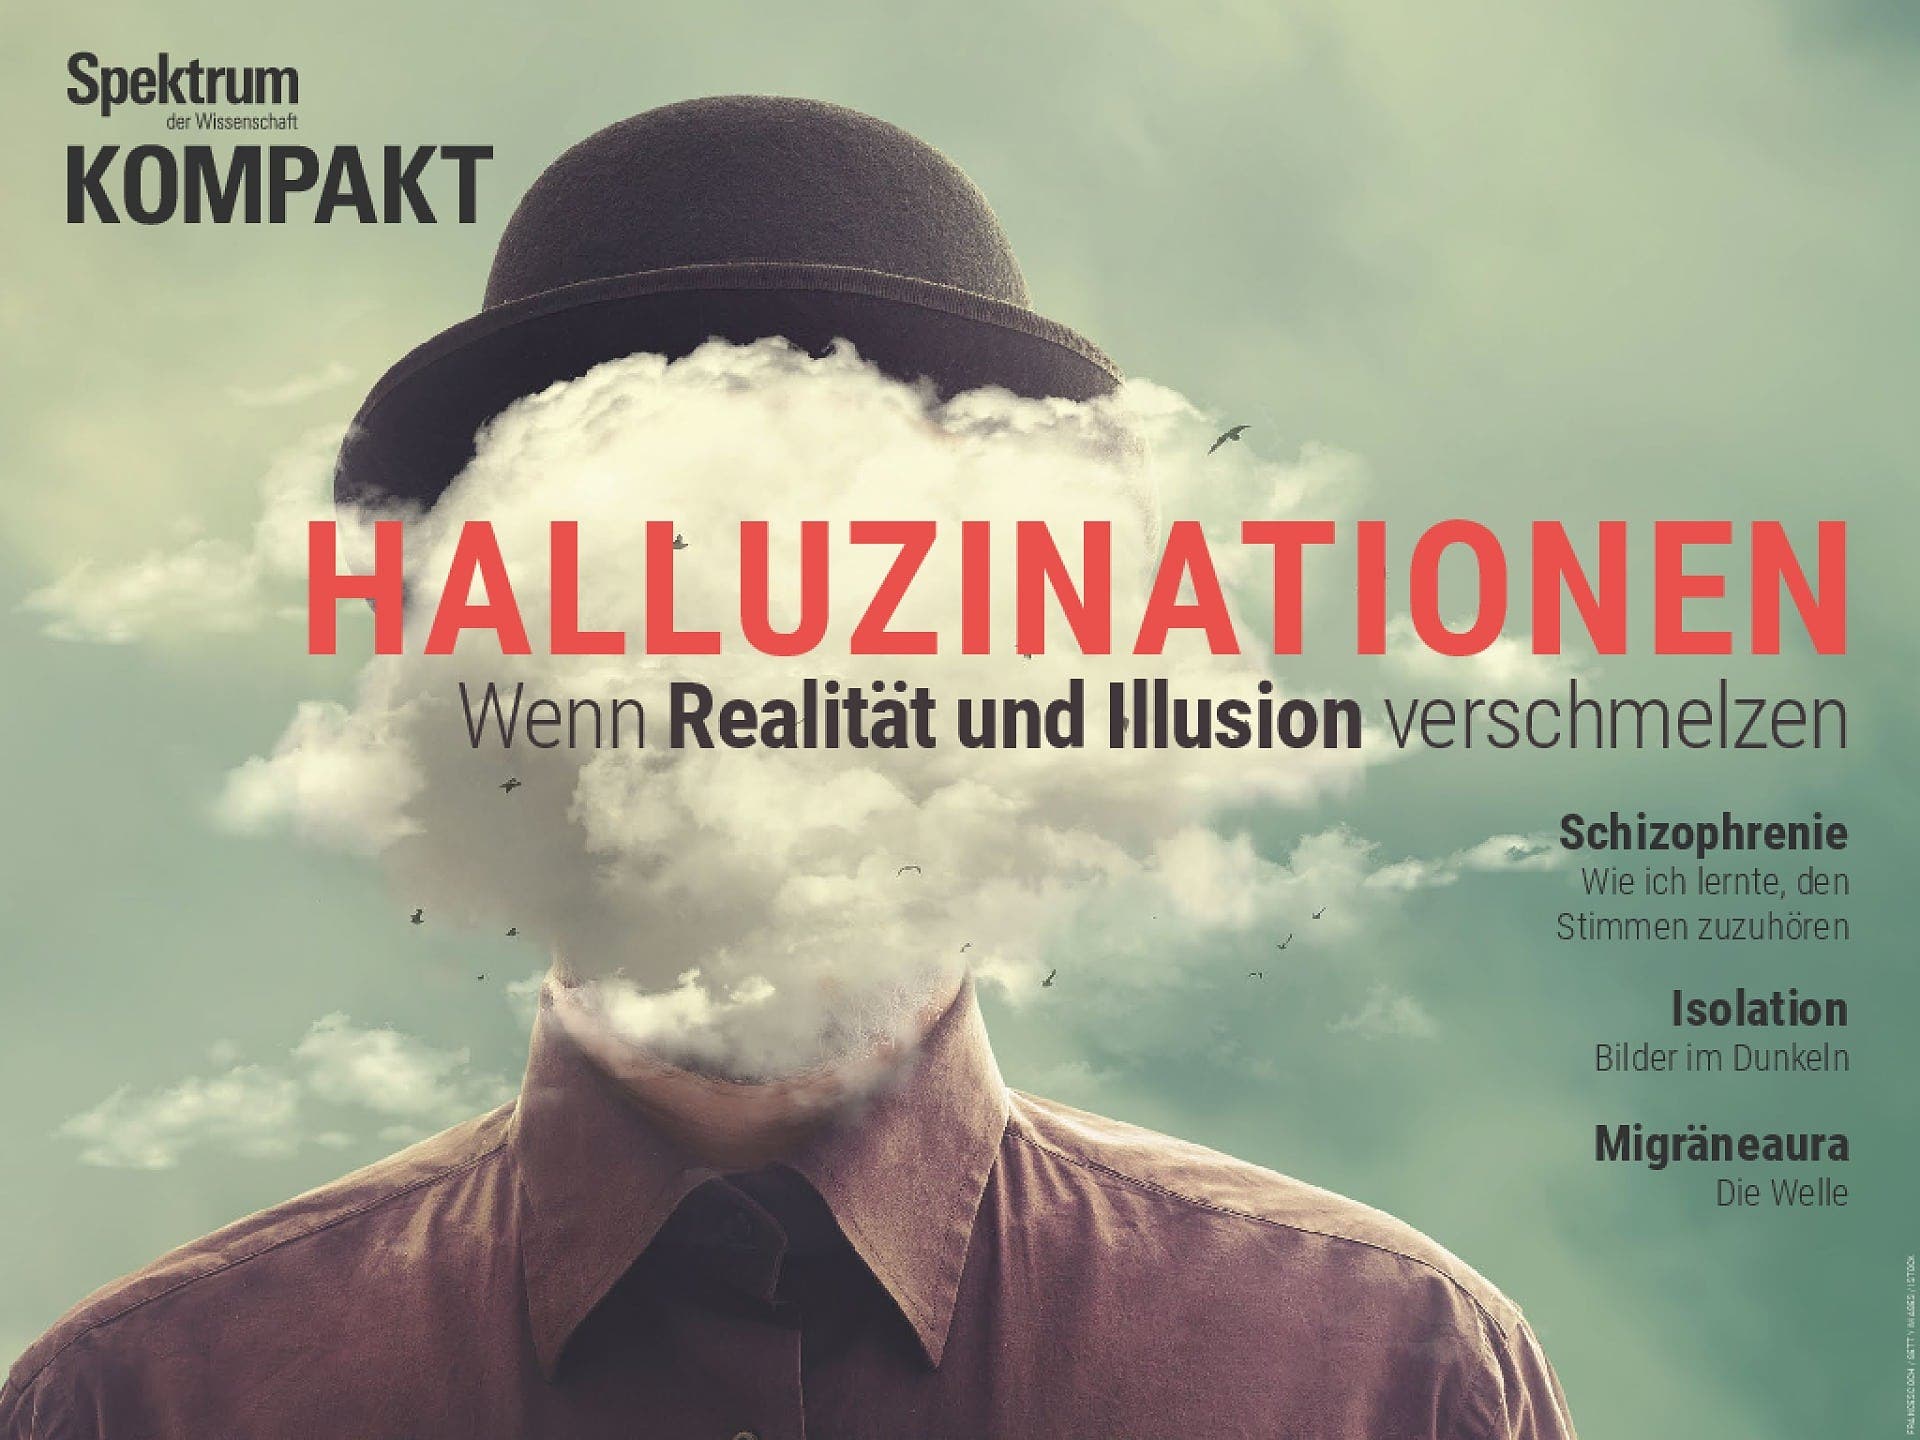 Halluzinationen - Wenn Realität und Illusion verschmelzen